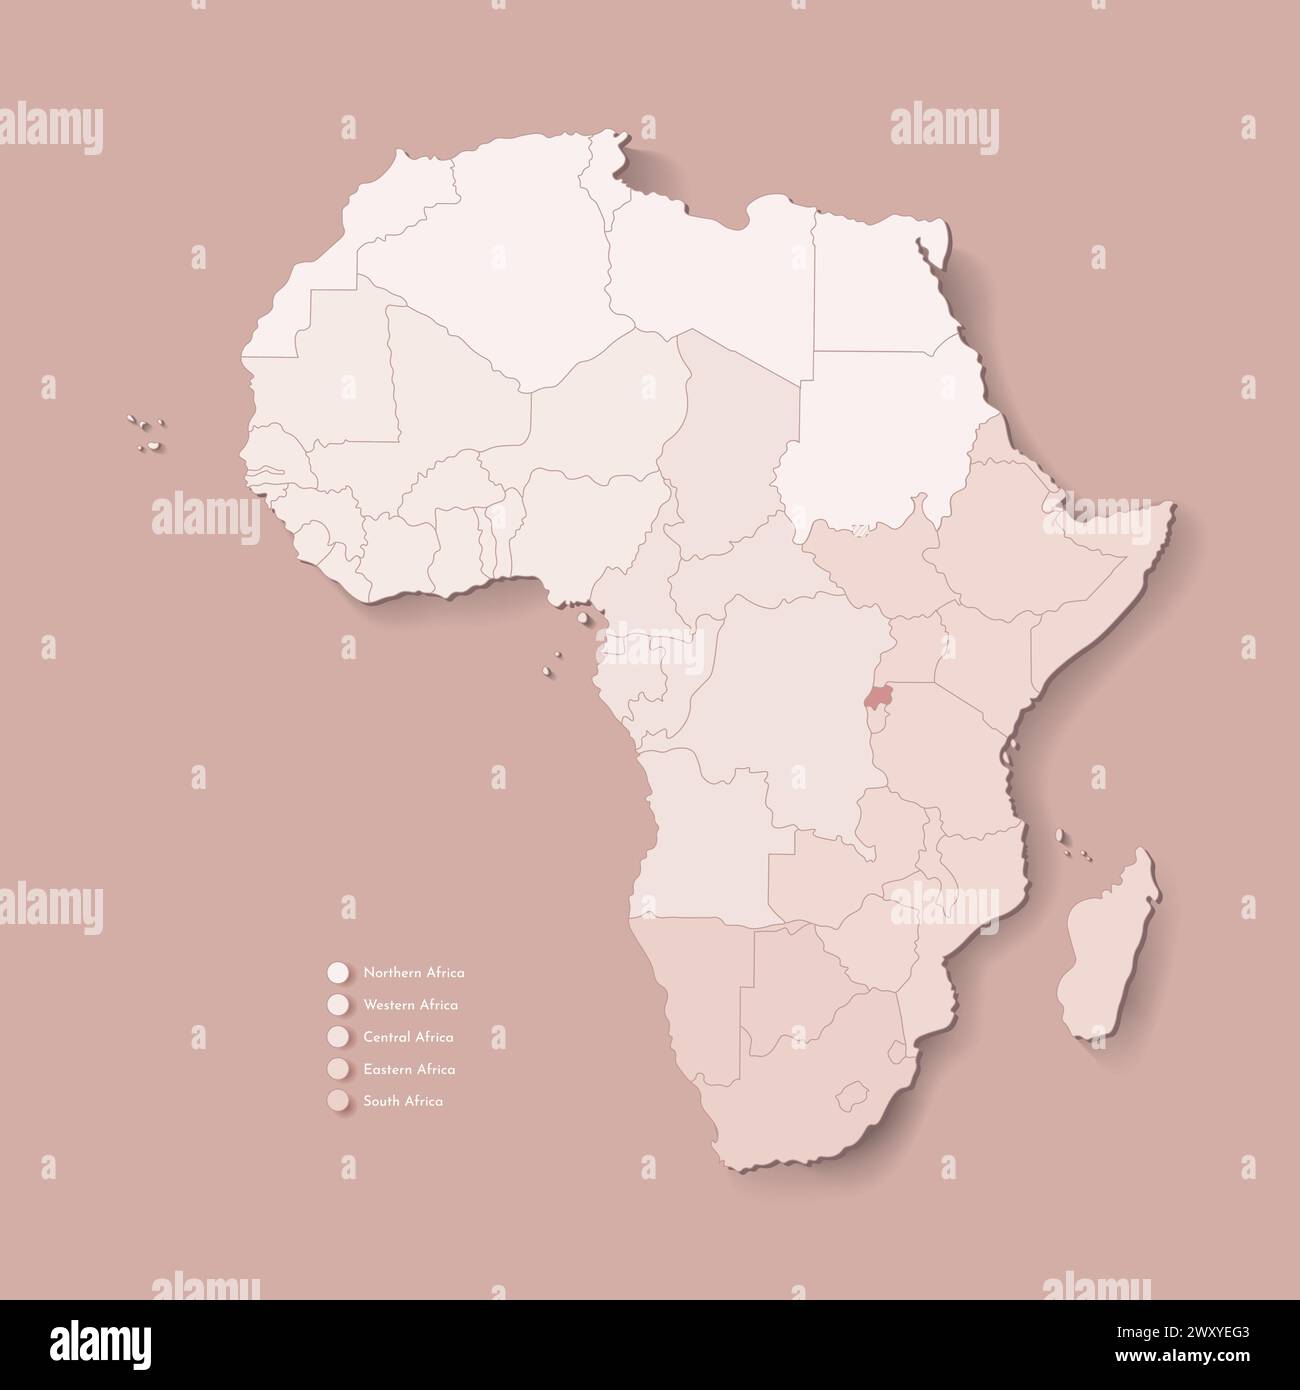 Illustrazione vettoriale con continente africano con confini di tutti gli stati e paese marcato Ruanda. Mappa politica di colore marrone con occidentale, sud e. Illustrazione Vettoriale